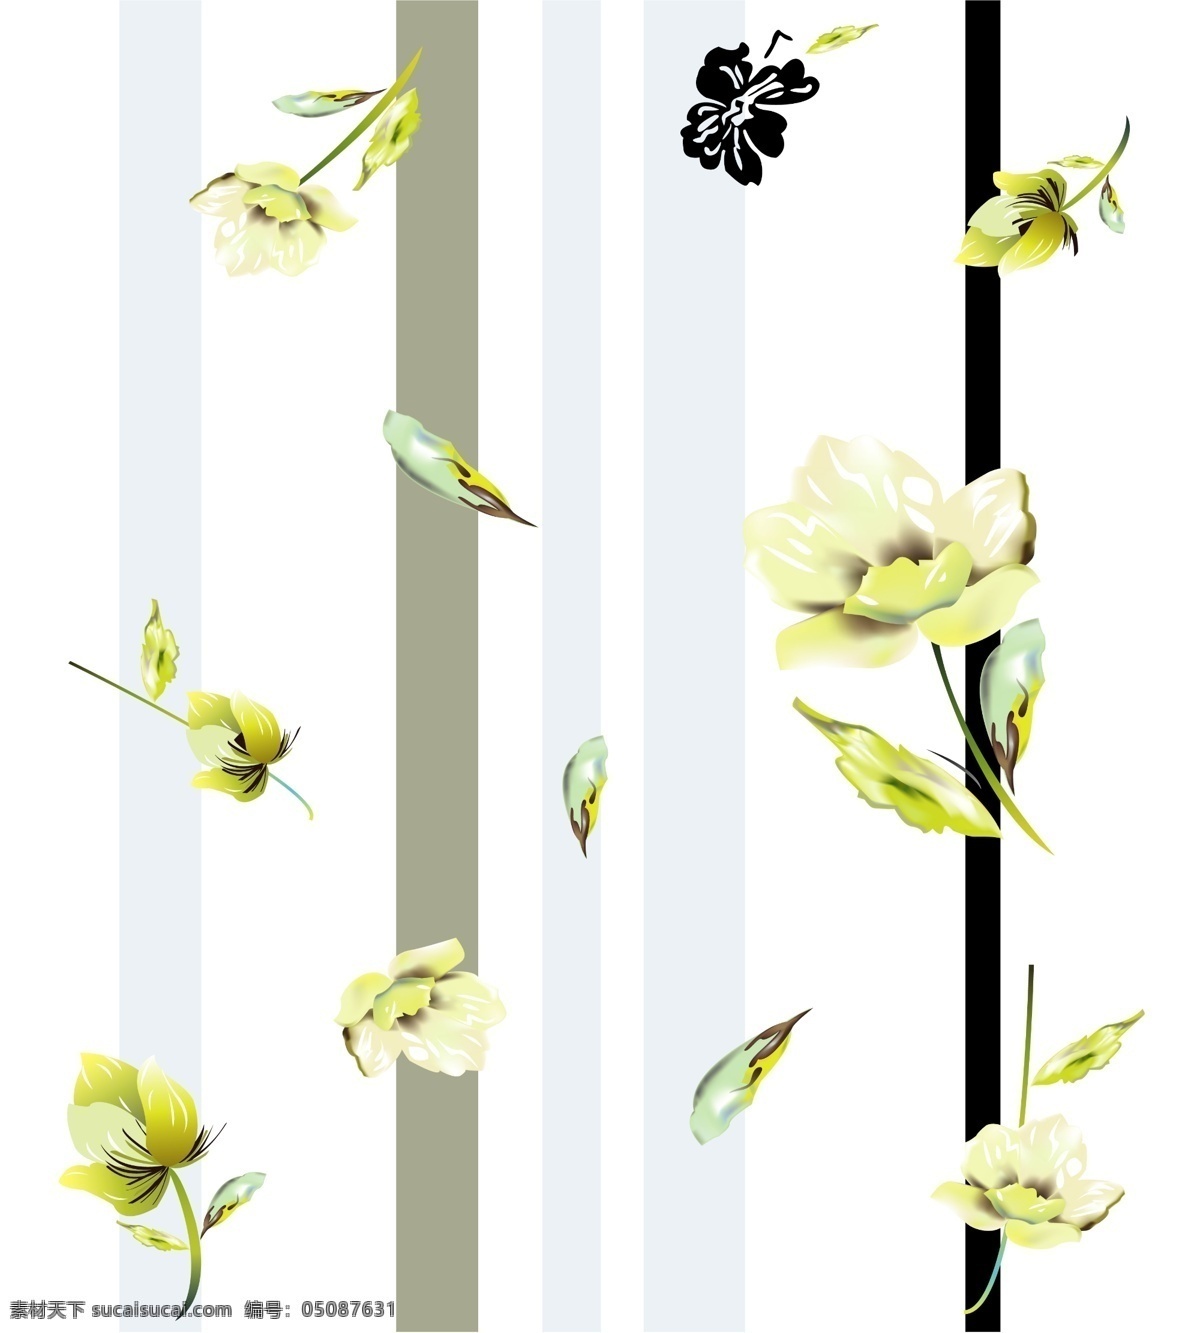 玻璃 壁纸 空间 思维 空间图片 设计图 生活百科 花朵 叶子 色 条 背景 家居装饰素材 壁纸墙画壁纸